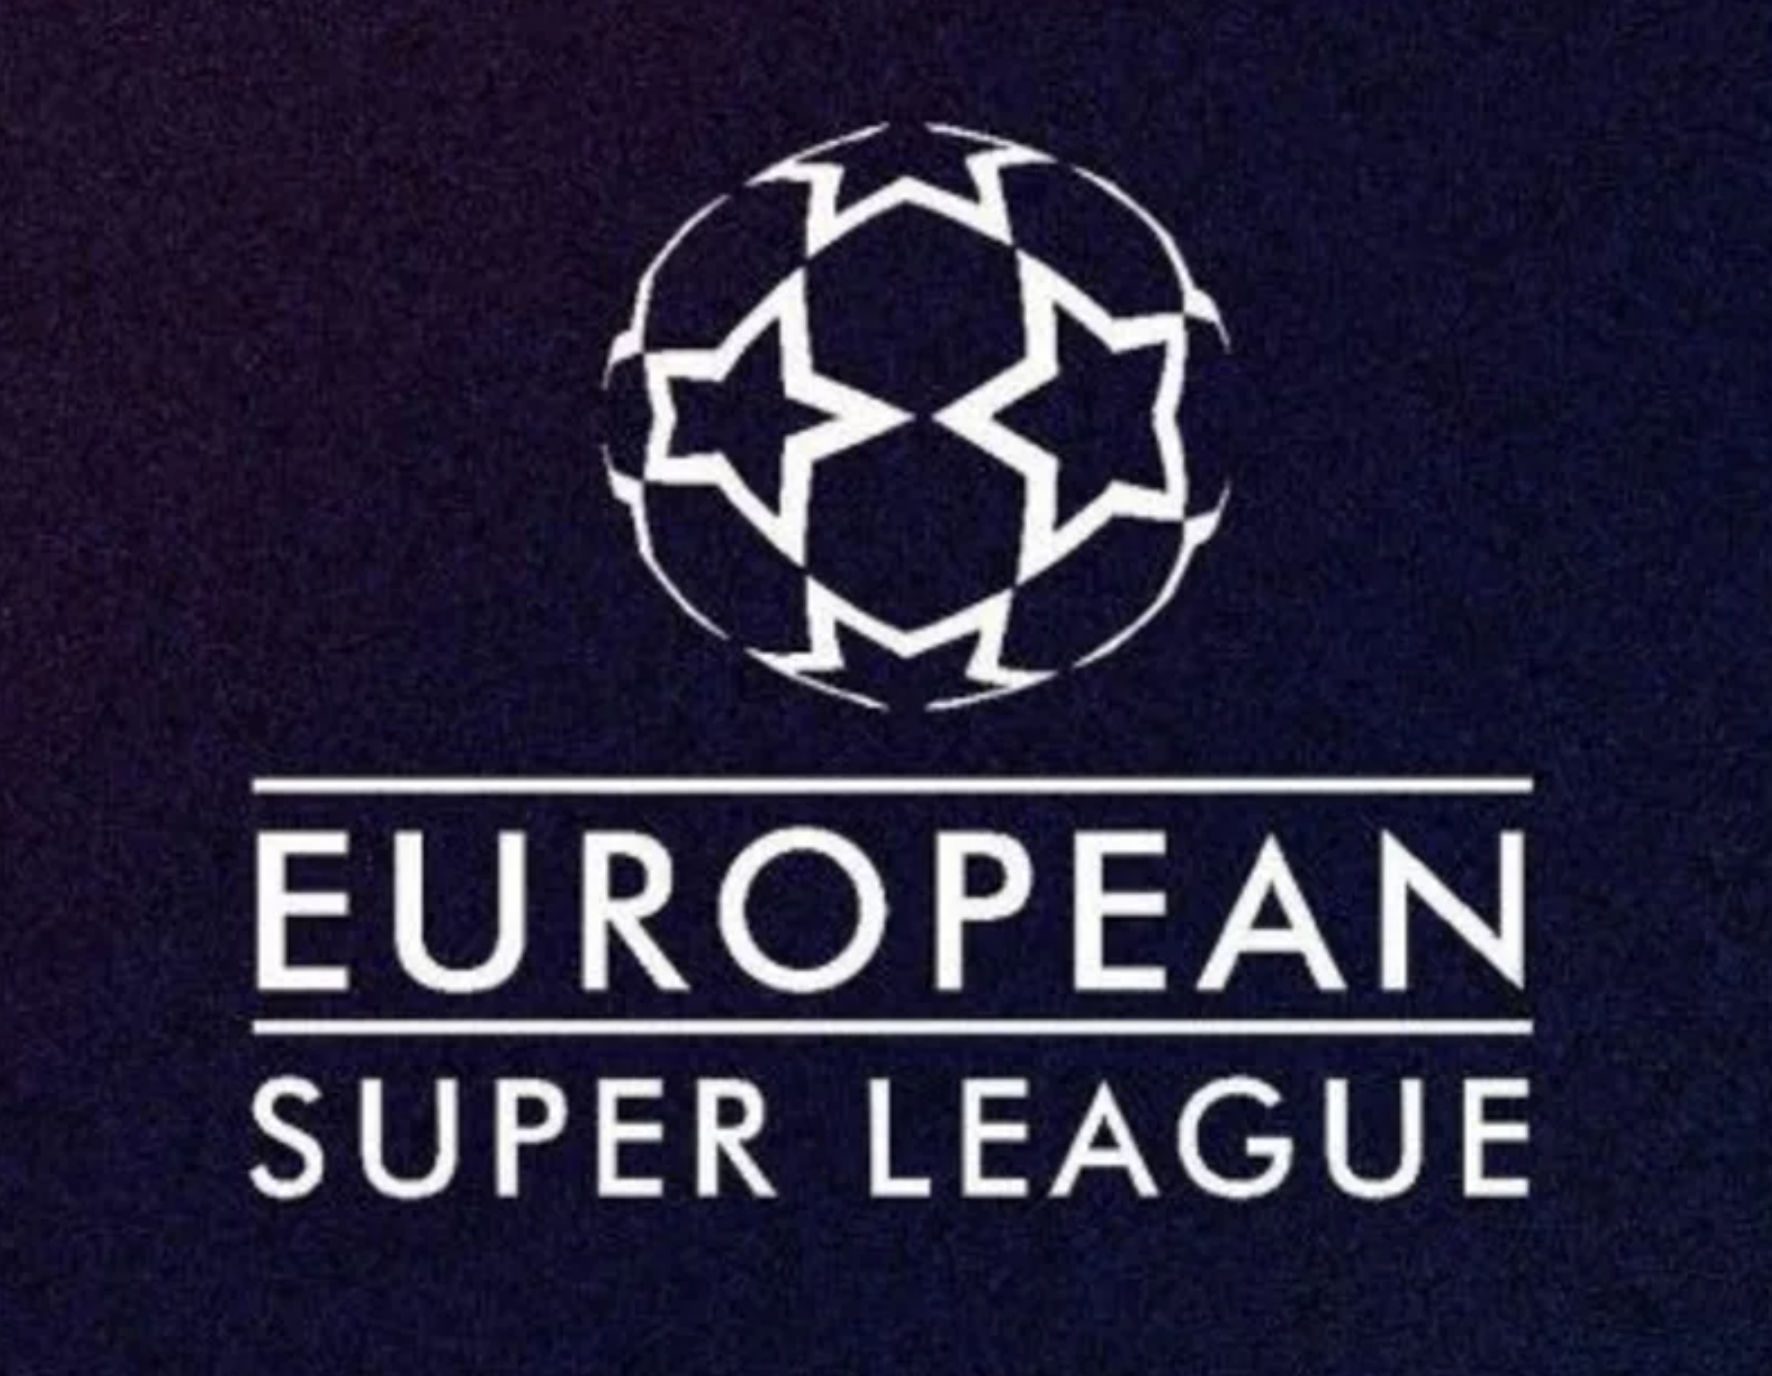 Μπάγερν, Μάντσεστερ Γιουνάιτεντ και Ατλέτικο Μαδρίτης ρίχνουν «πόρτα» στην European Super League